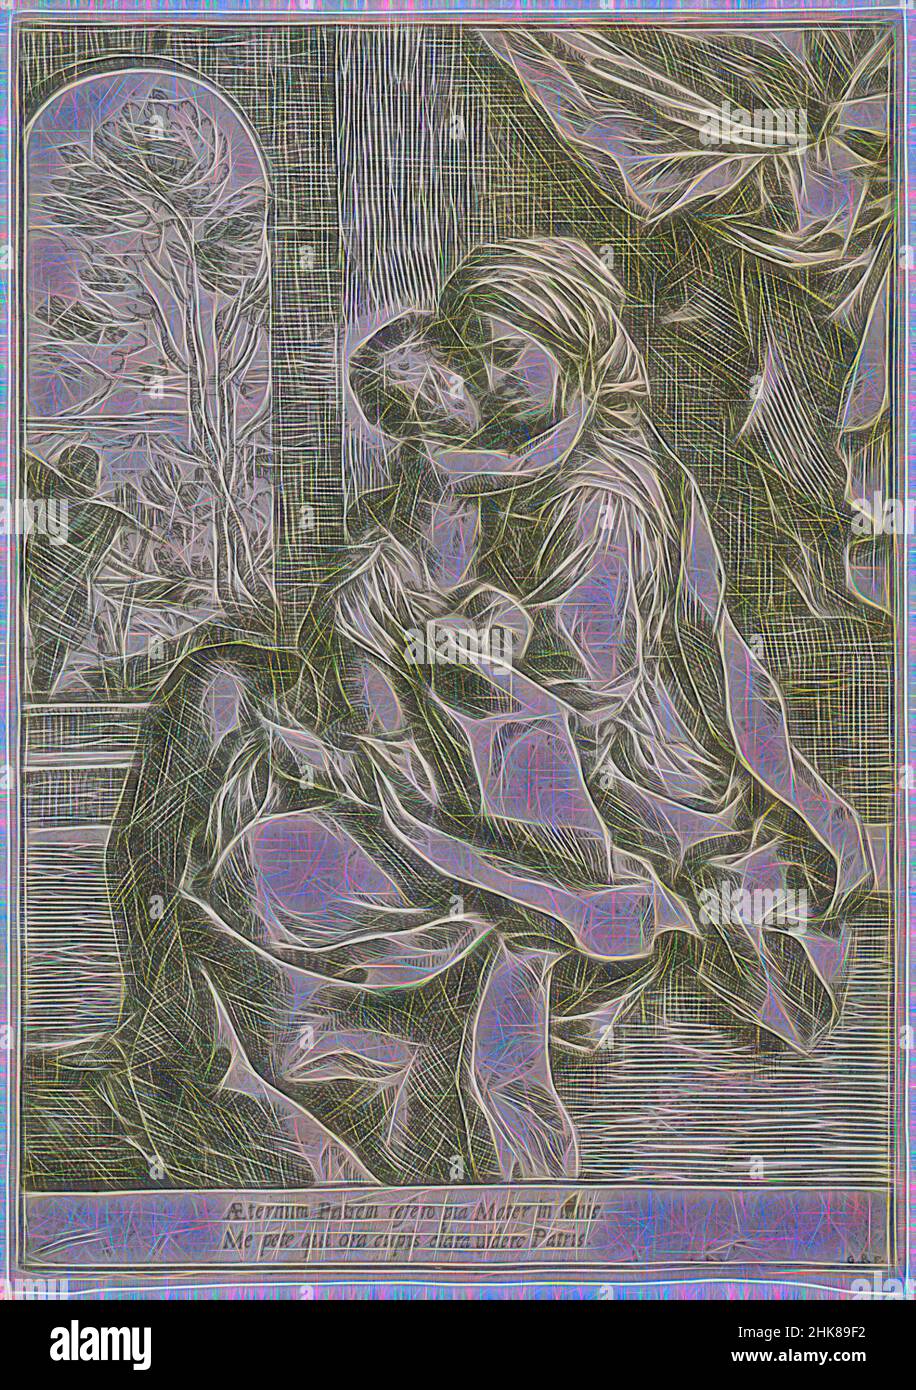 Inspiriert von der mit dem Christkind sitzenden Jungfrau, Guido Reni, 1600-1613, Radierung, Diese Radierung, Gezeichnet und gedruckt vom berühmten Bologneser Künstler Guido Reni (1575-1642), verkörpert er mit seiner kompositorischen Klarheit und stark religiösen Botschaft den frühen Barock. Es wird durch Reni's, Reimagined by Artotop gekennzeichnet. Klassische Kunst neu erfunden mit einem modernen Twist. Design von warmen fröhlichen Leuchten der Helligkeit und Lichtstrahl Strahlkraft. Fotografie inspiriert von Surrealismus und Futurismus, umarmt dynamische Energie der modernen Technologie, Bewegung, Geschwindigkeit und Kultur zu revolutionieren Stockfoto